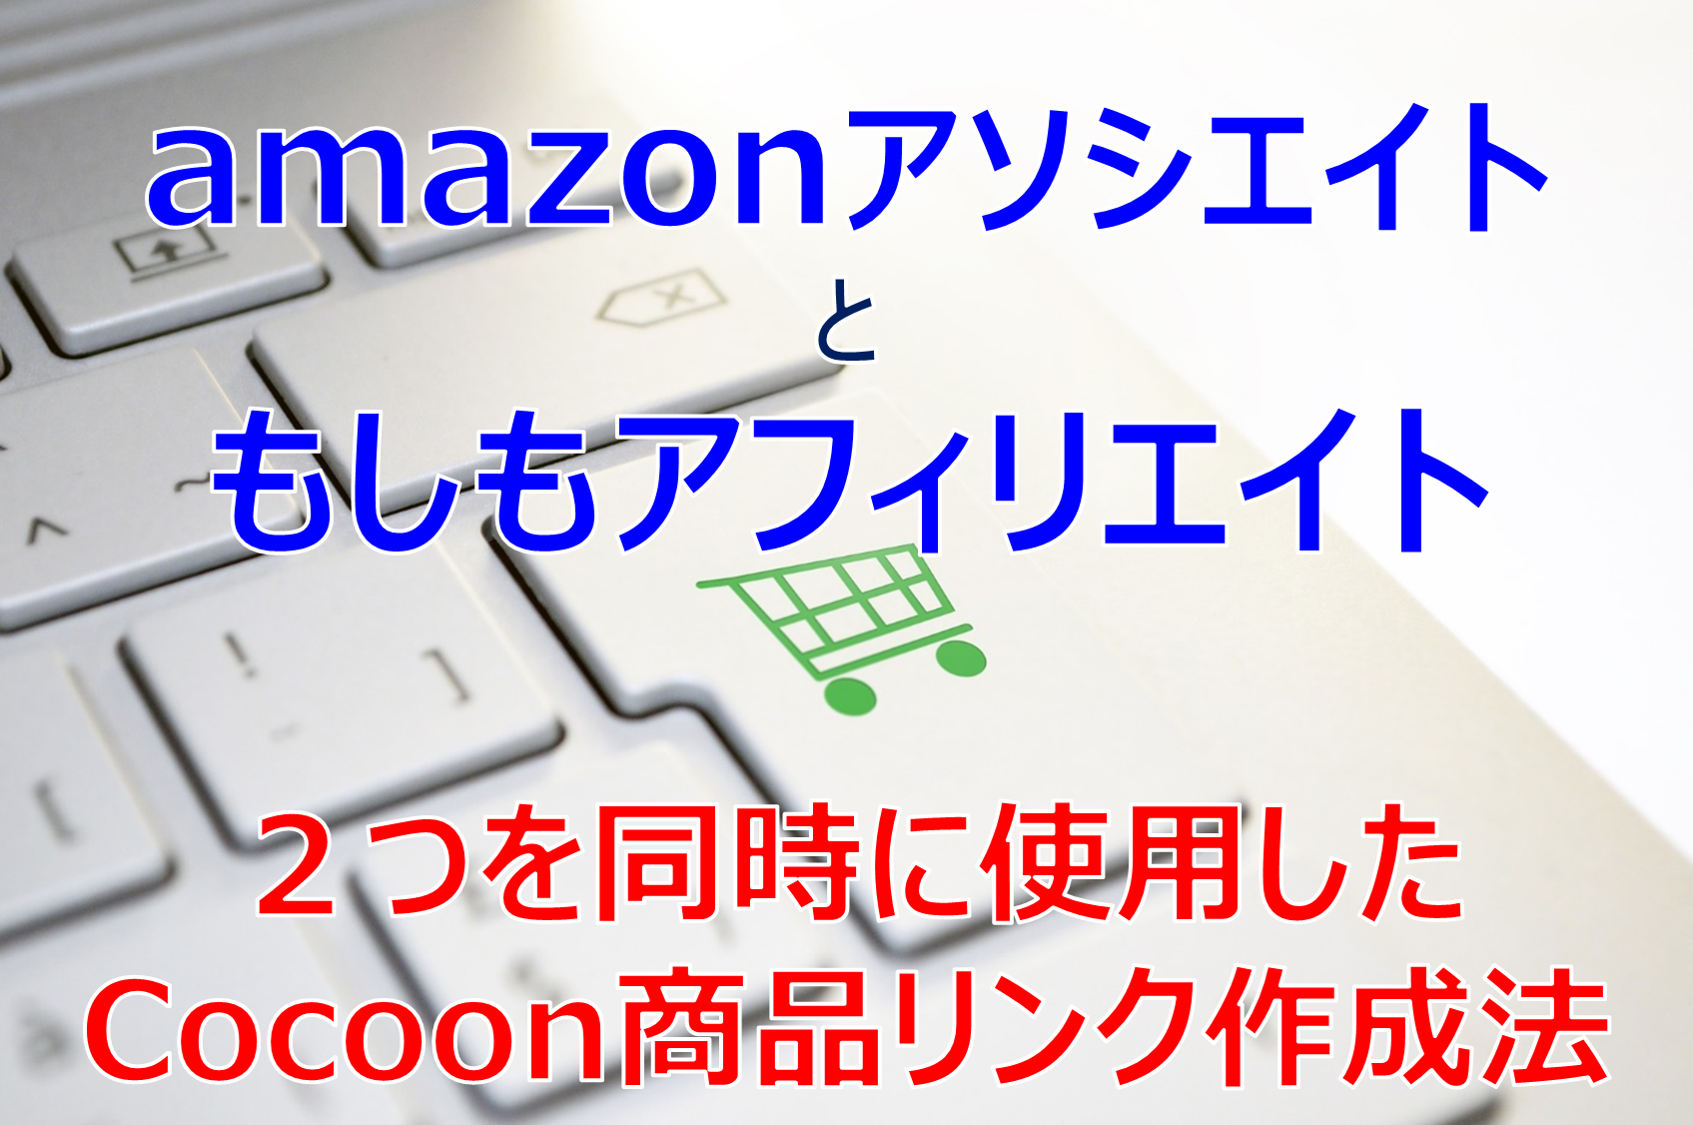 Cocoonの商品リンクでアマゾンともしもリンクを同時に使う方法